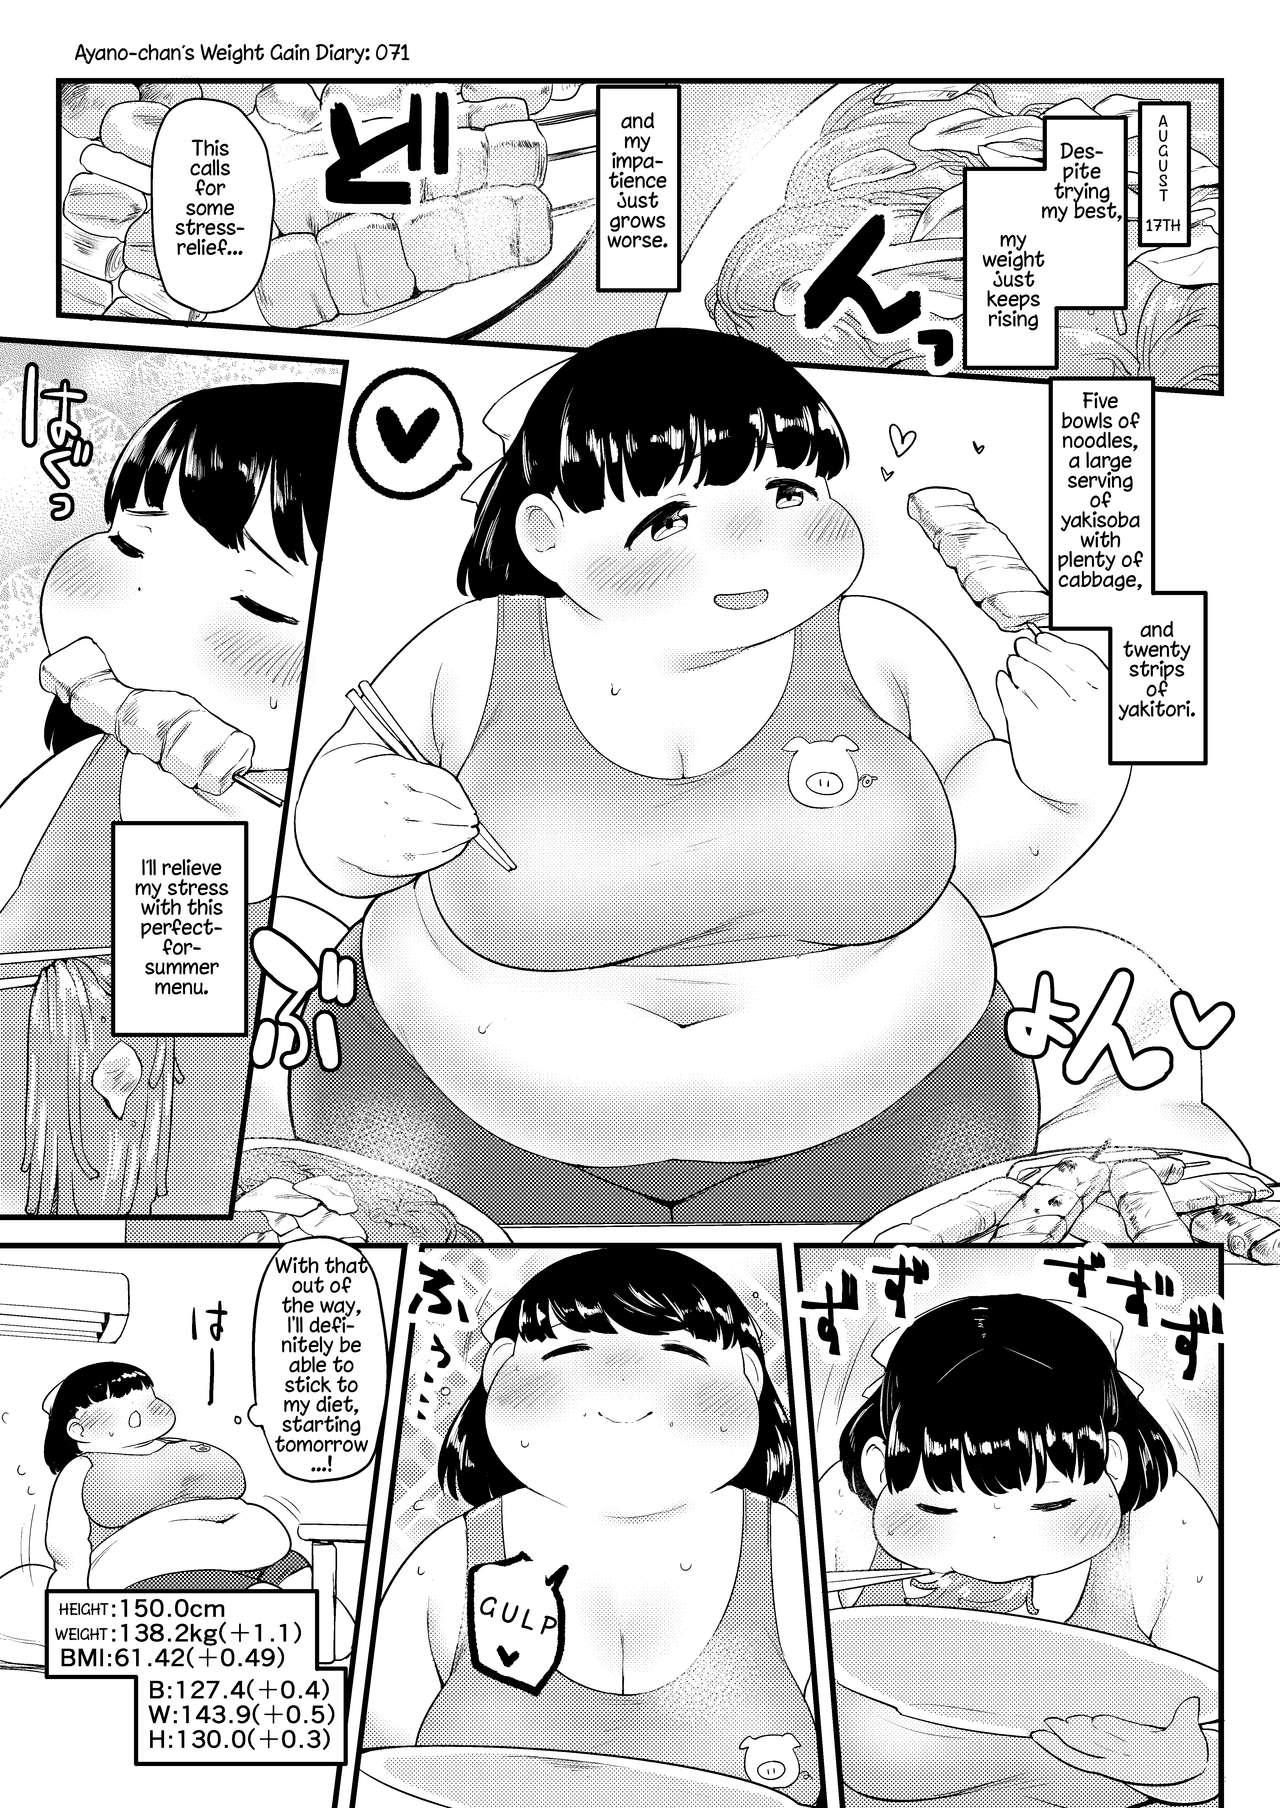 Ayano's Weight Gain Diary 70